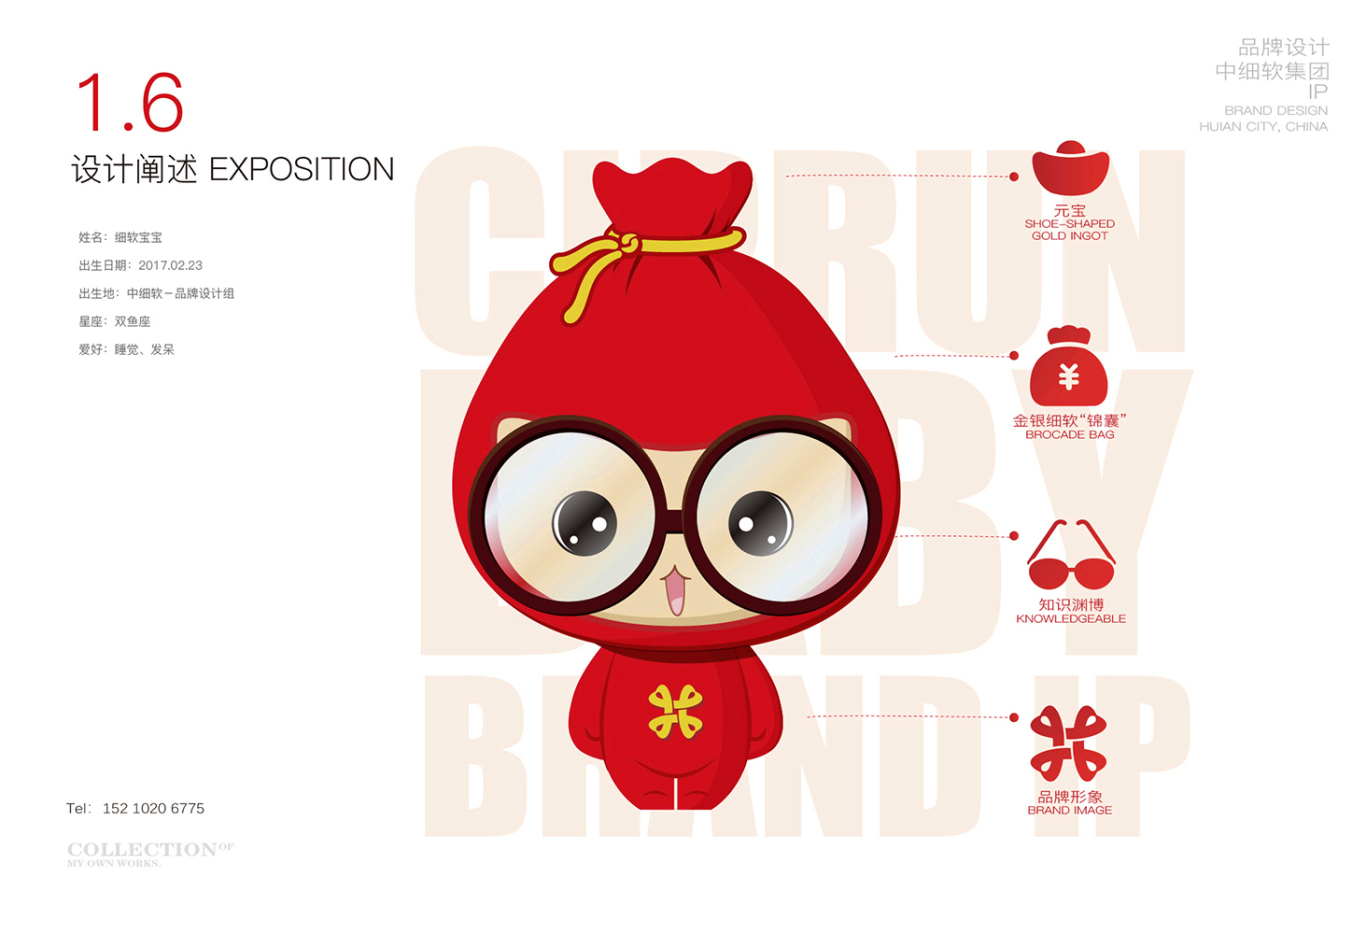 中细软集团 知识产权服务平台 吉祥物设计图1